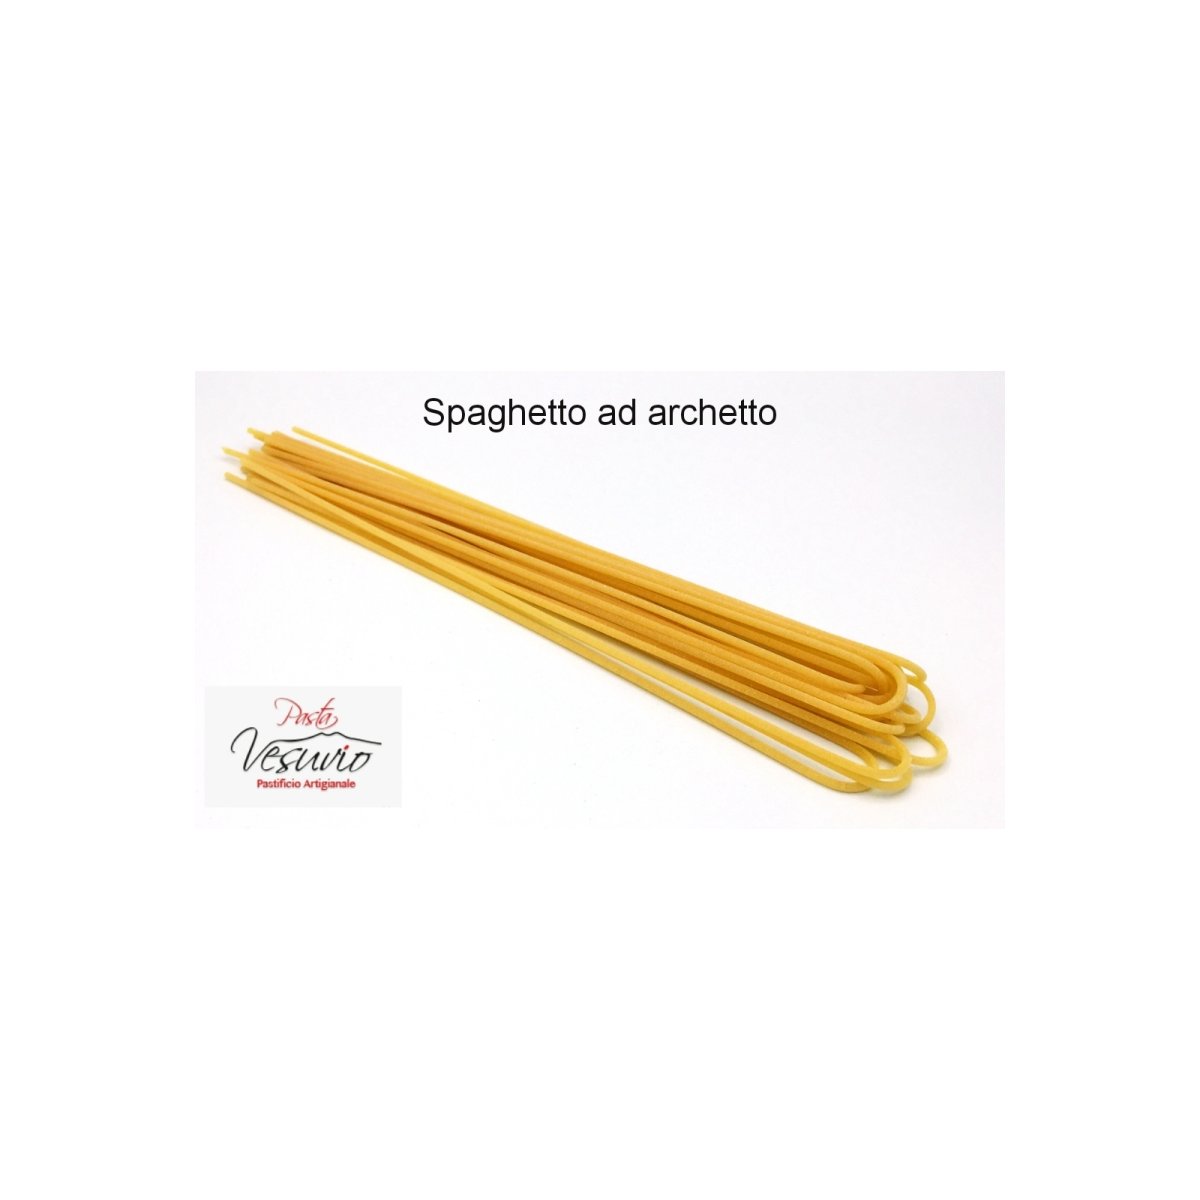 Spaghetto ad archetto 2x500g